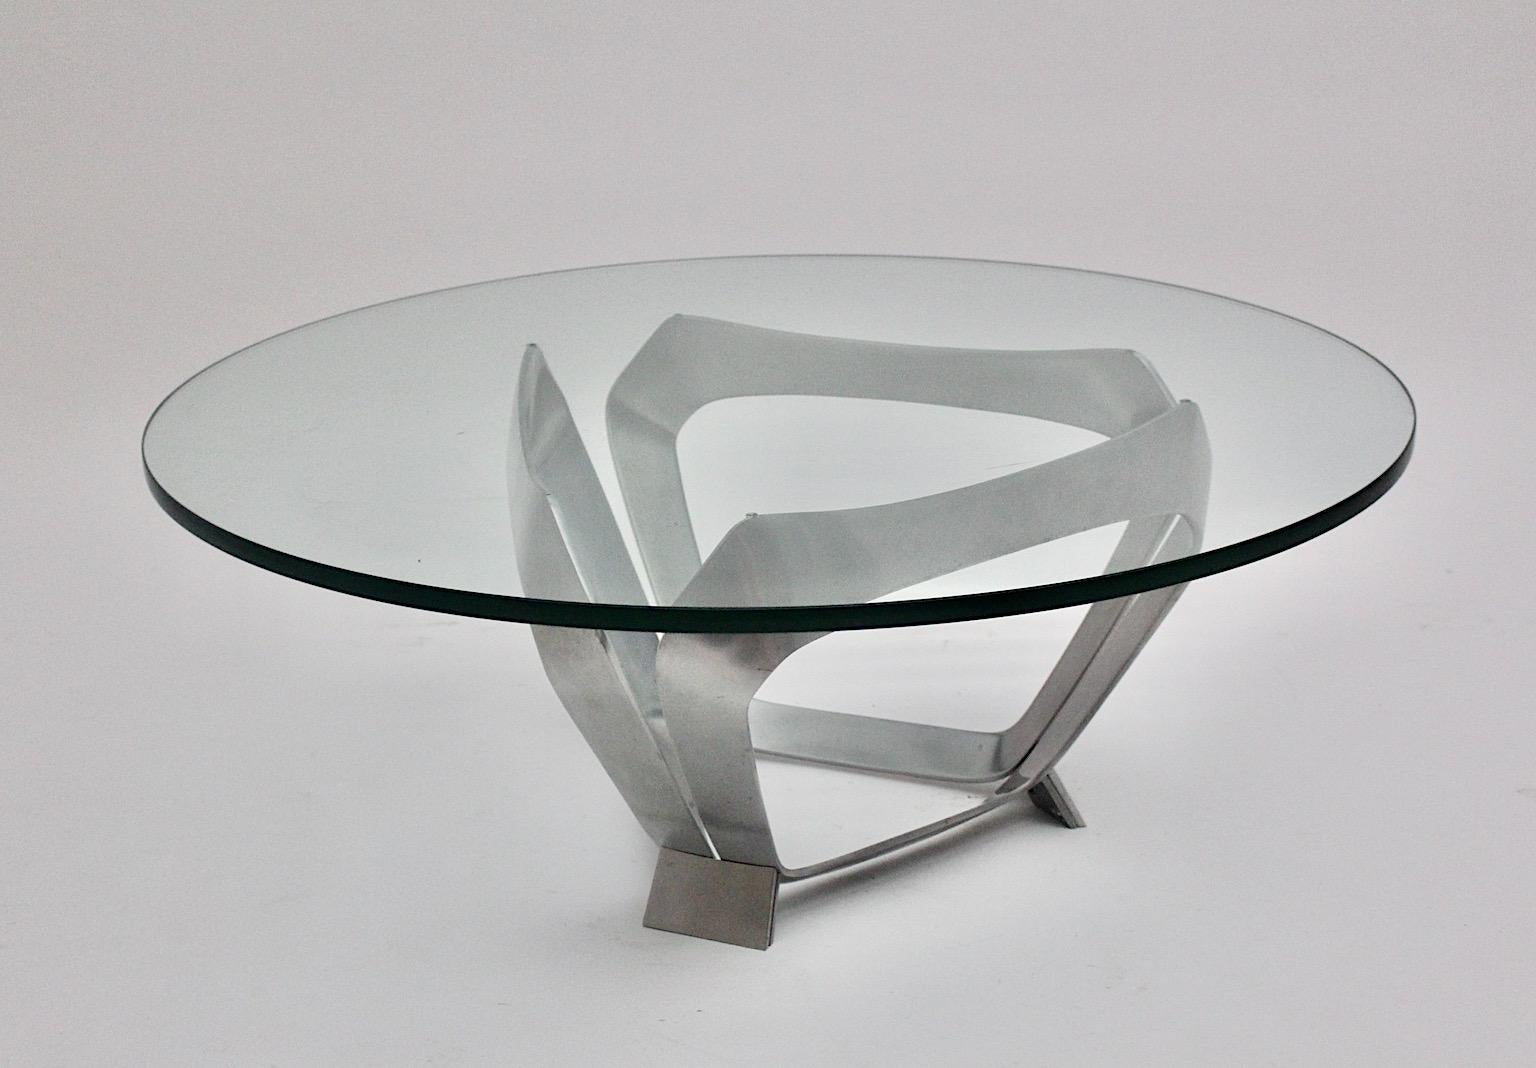 Aluminium Glas Space Age Vintage Couchtisch oder Sofa Tisch, der von Knut Hesterberg 1960er Jahre Deutschland für Ronald Schmitt entworfen wurde.
Schöne Aluminium-Sockelkonstruktion in skulpturaler Diamantform, während die klare Glasplatte polierte